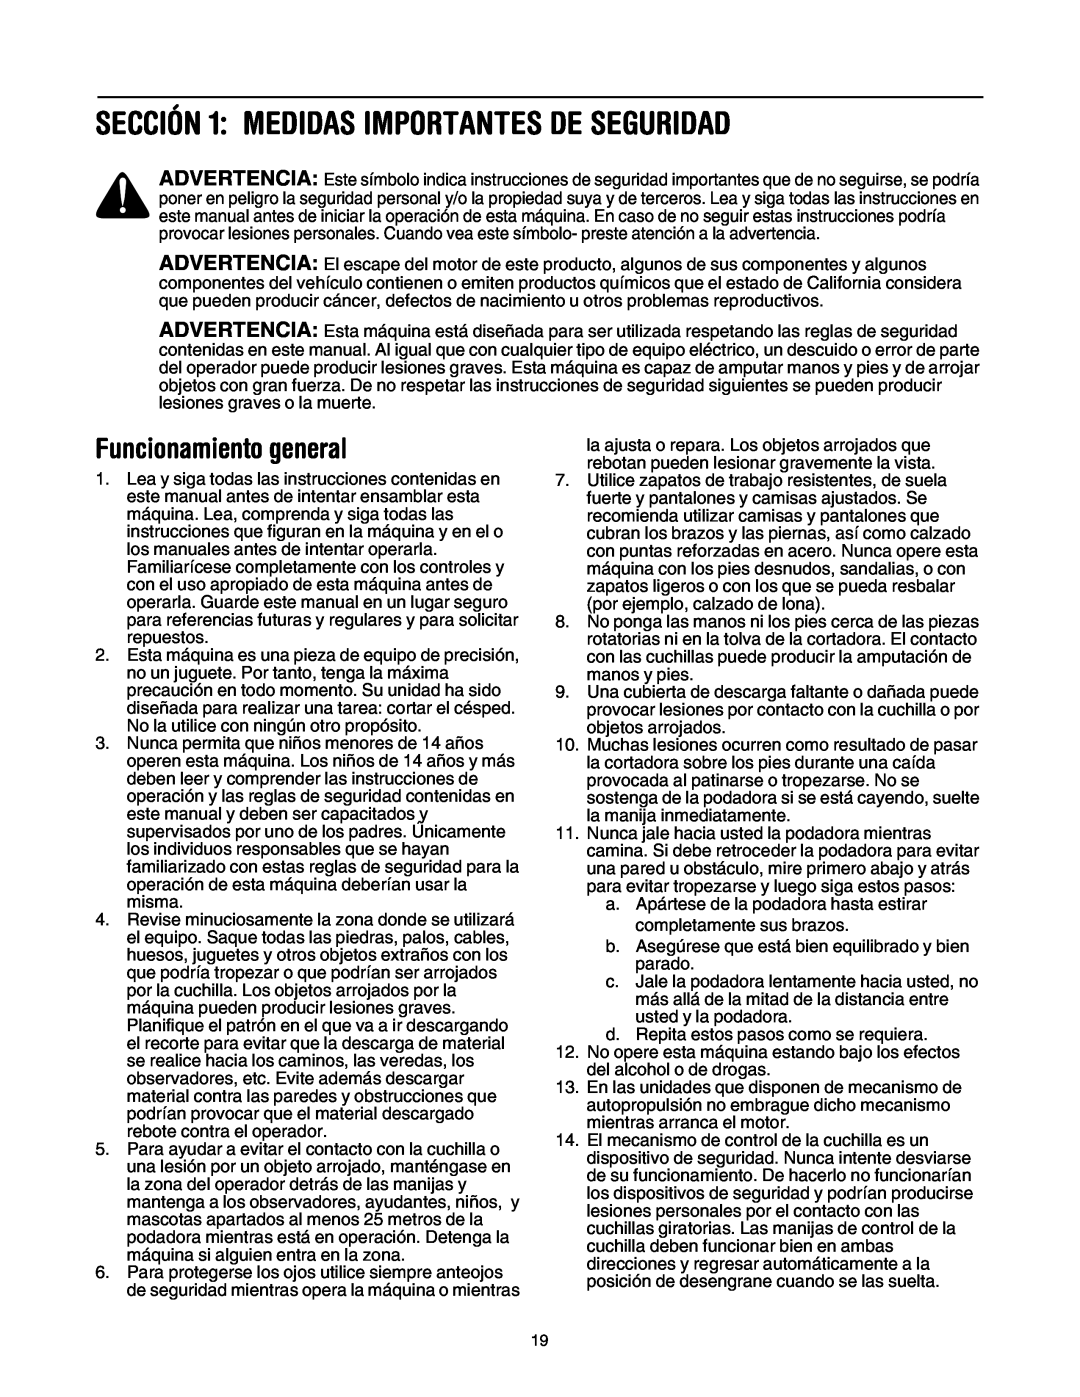 MTD 549 manual SECCIÓN 1 MEDIDAS IMPORTANTES DE SEGURIDAD, Funcionamiento general 